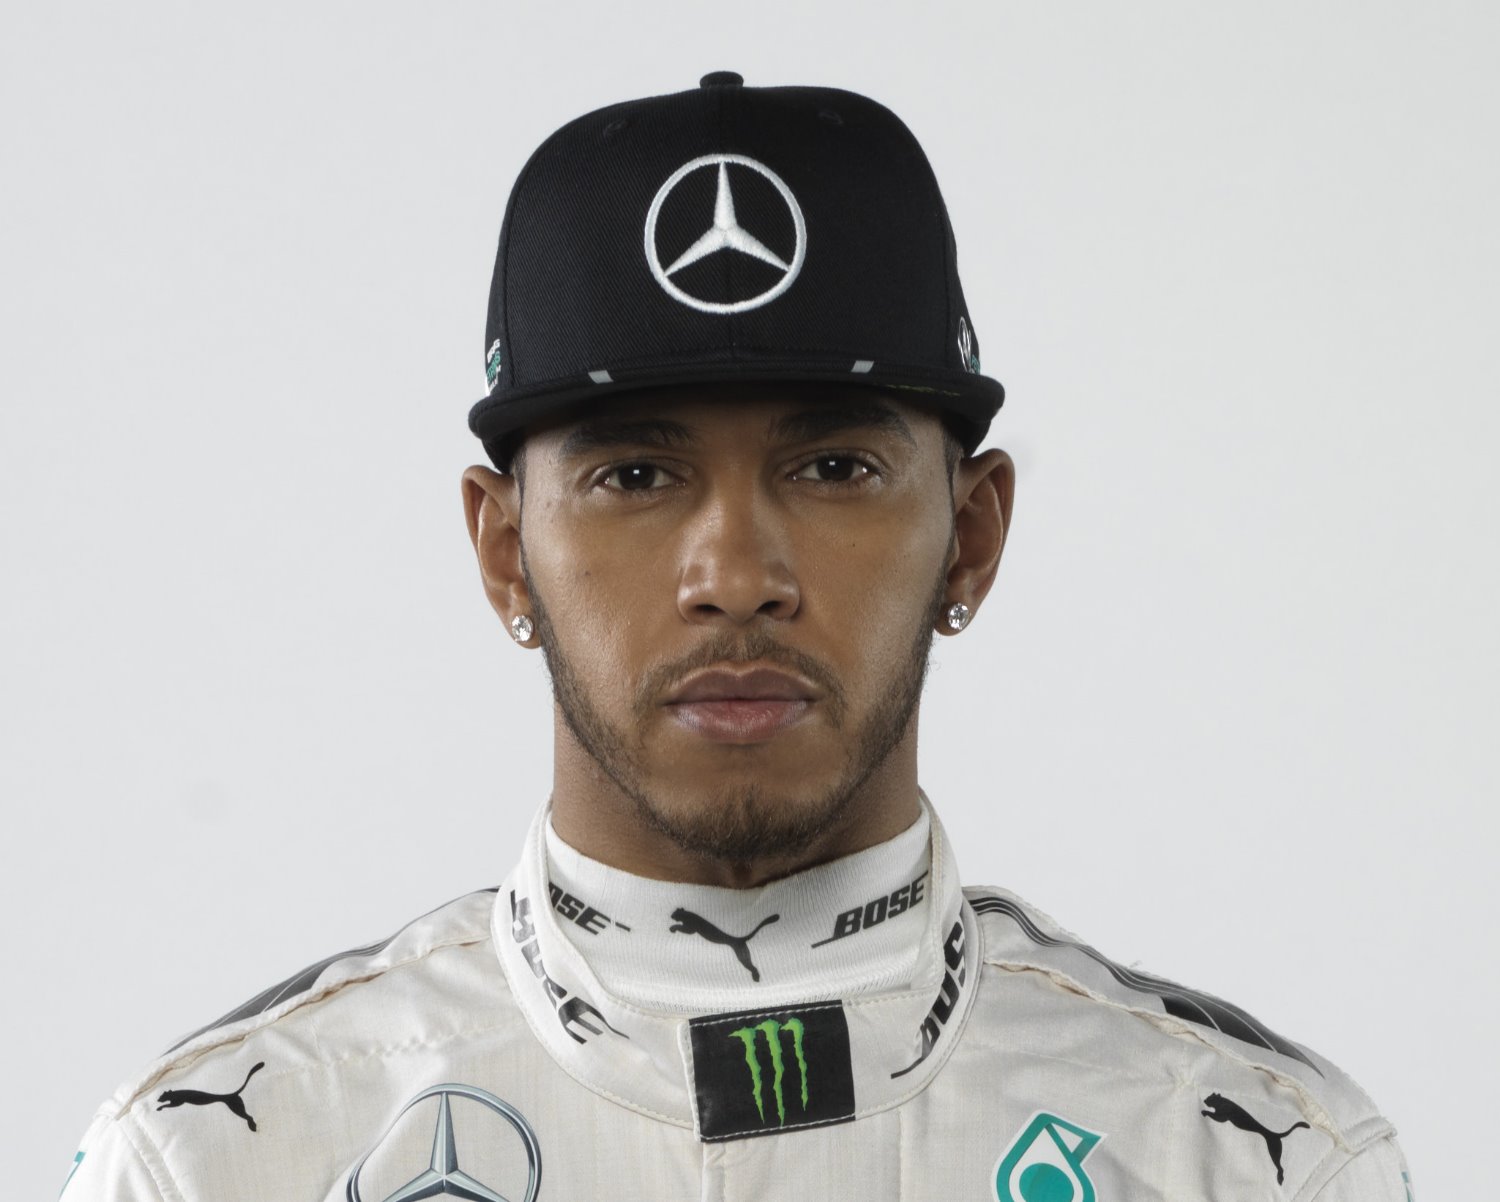 Lewis Hamilton not happy